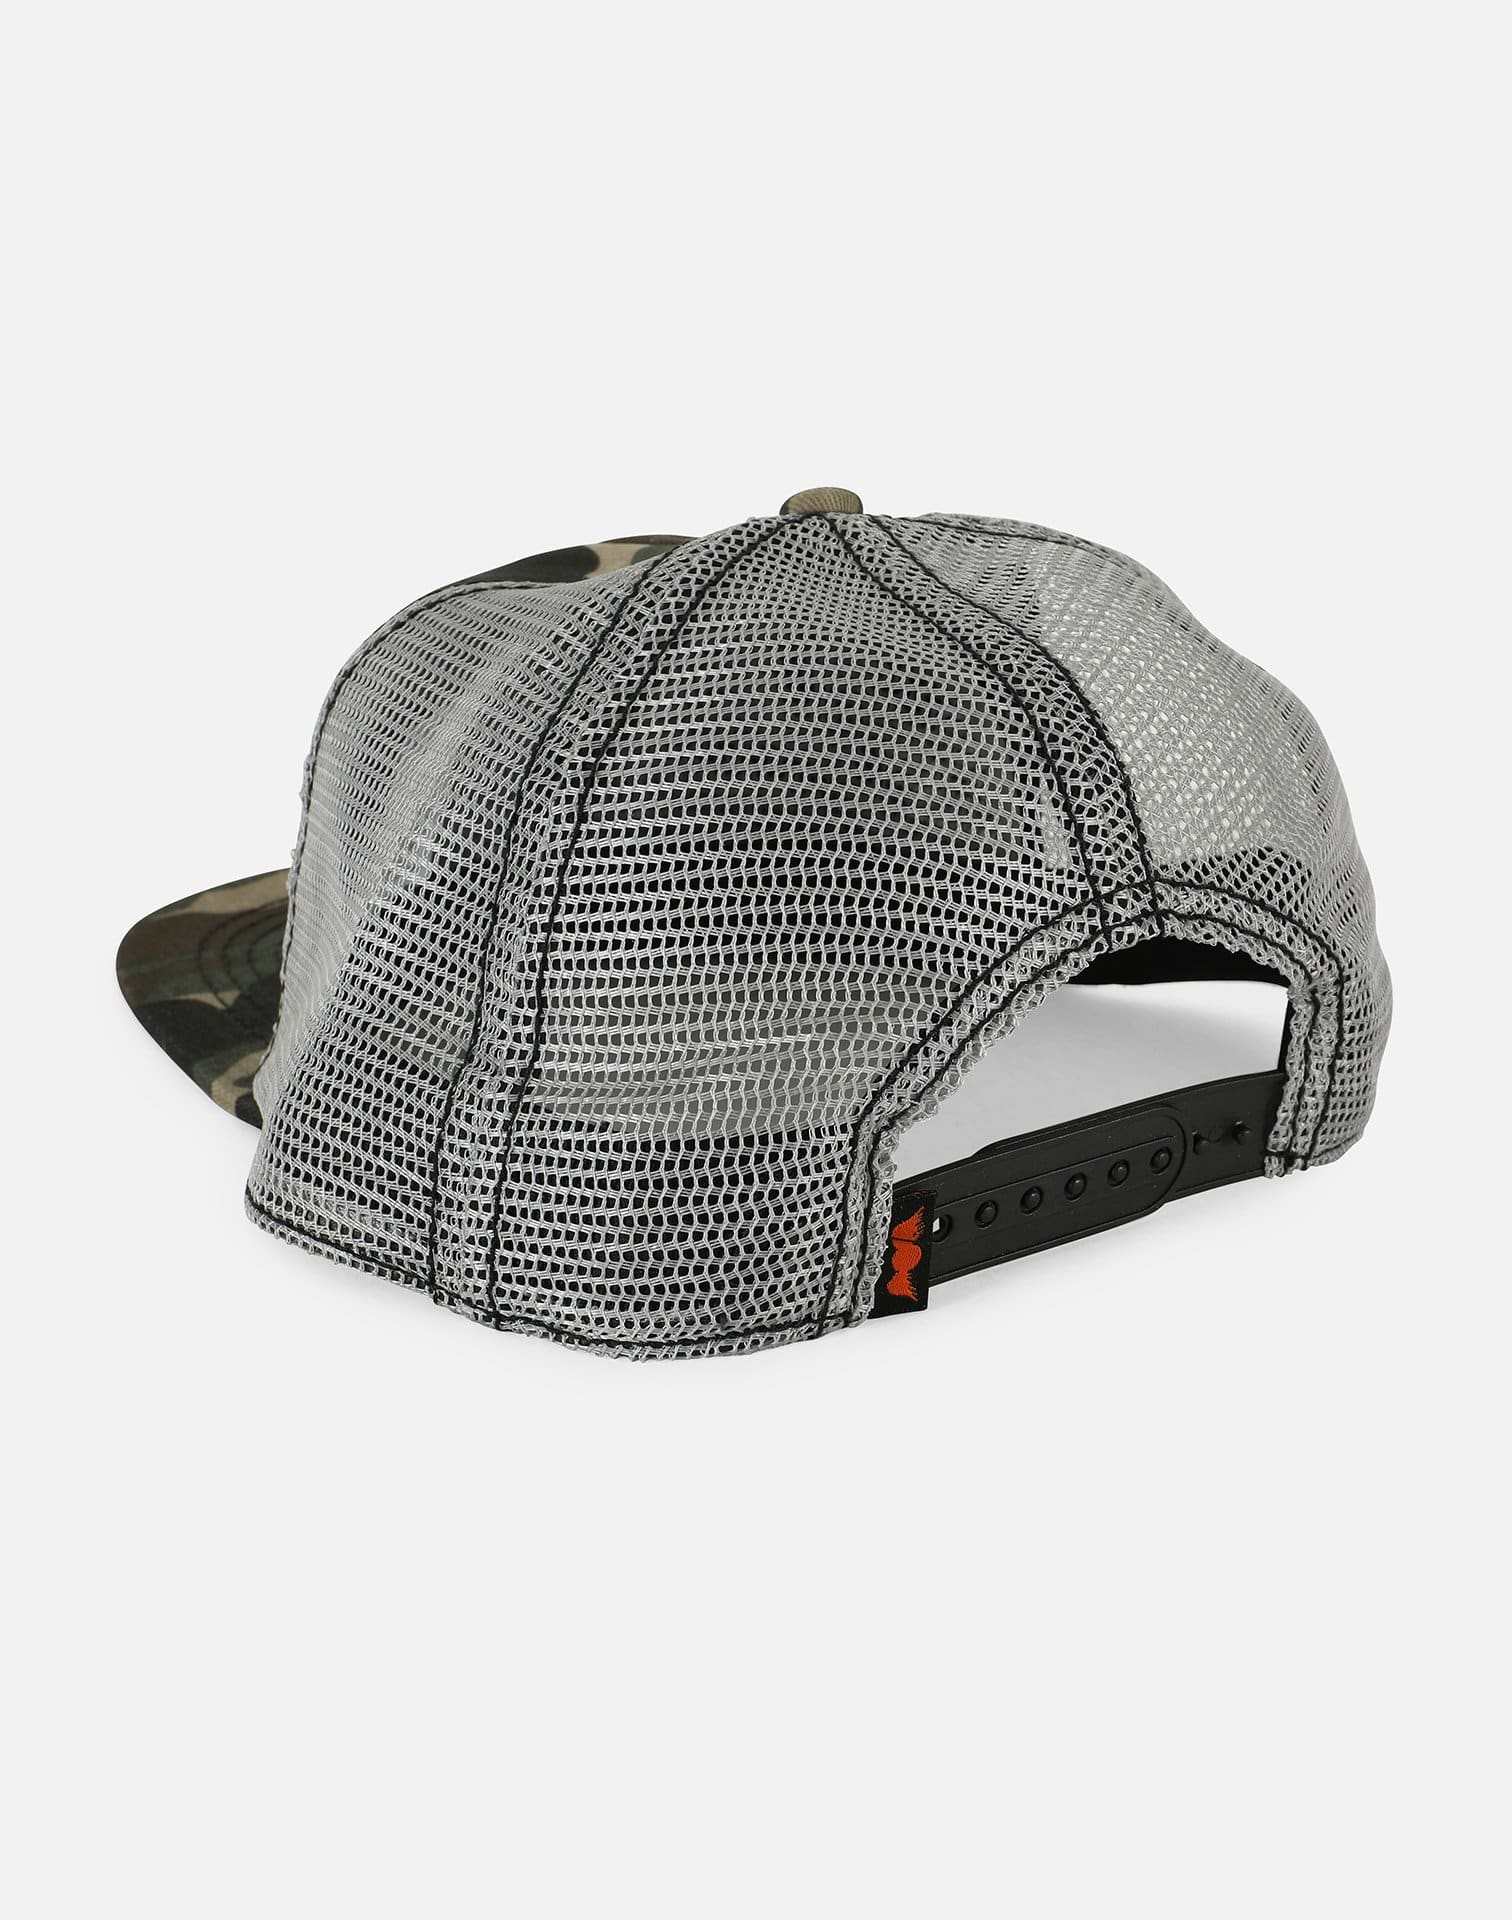 Von Dutch Trucker Snapback Hat